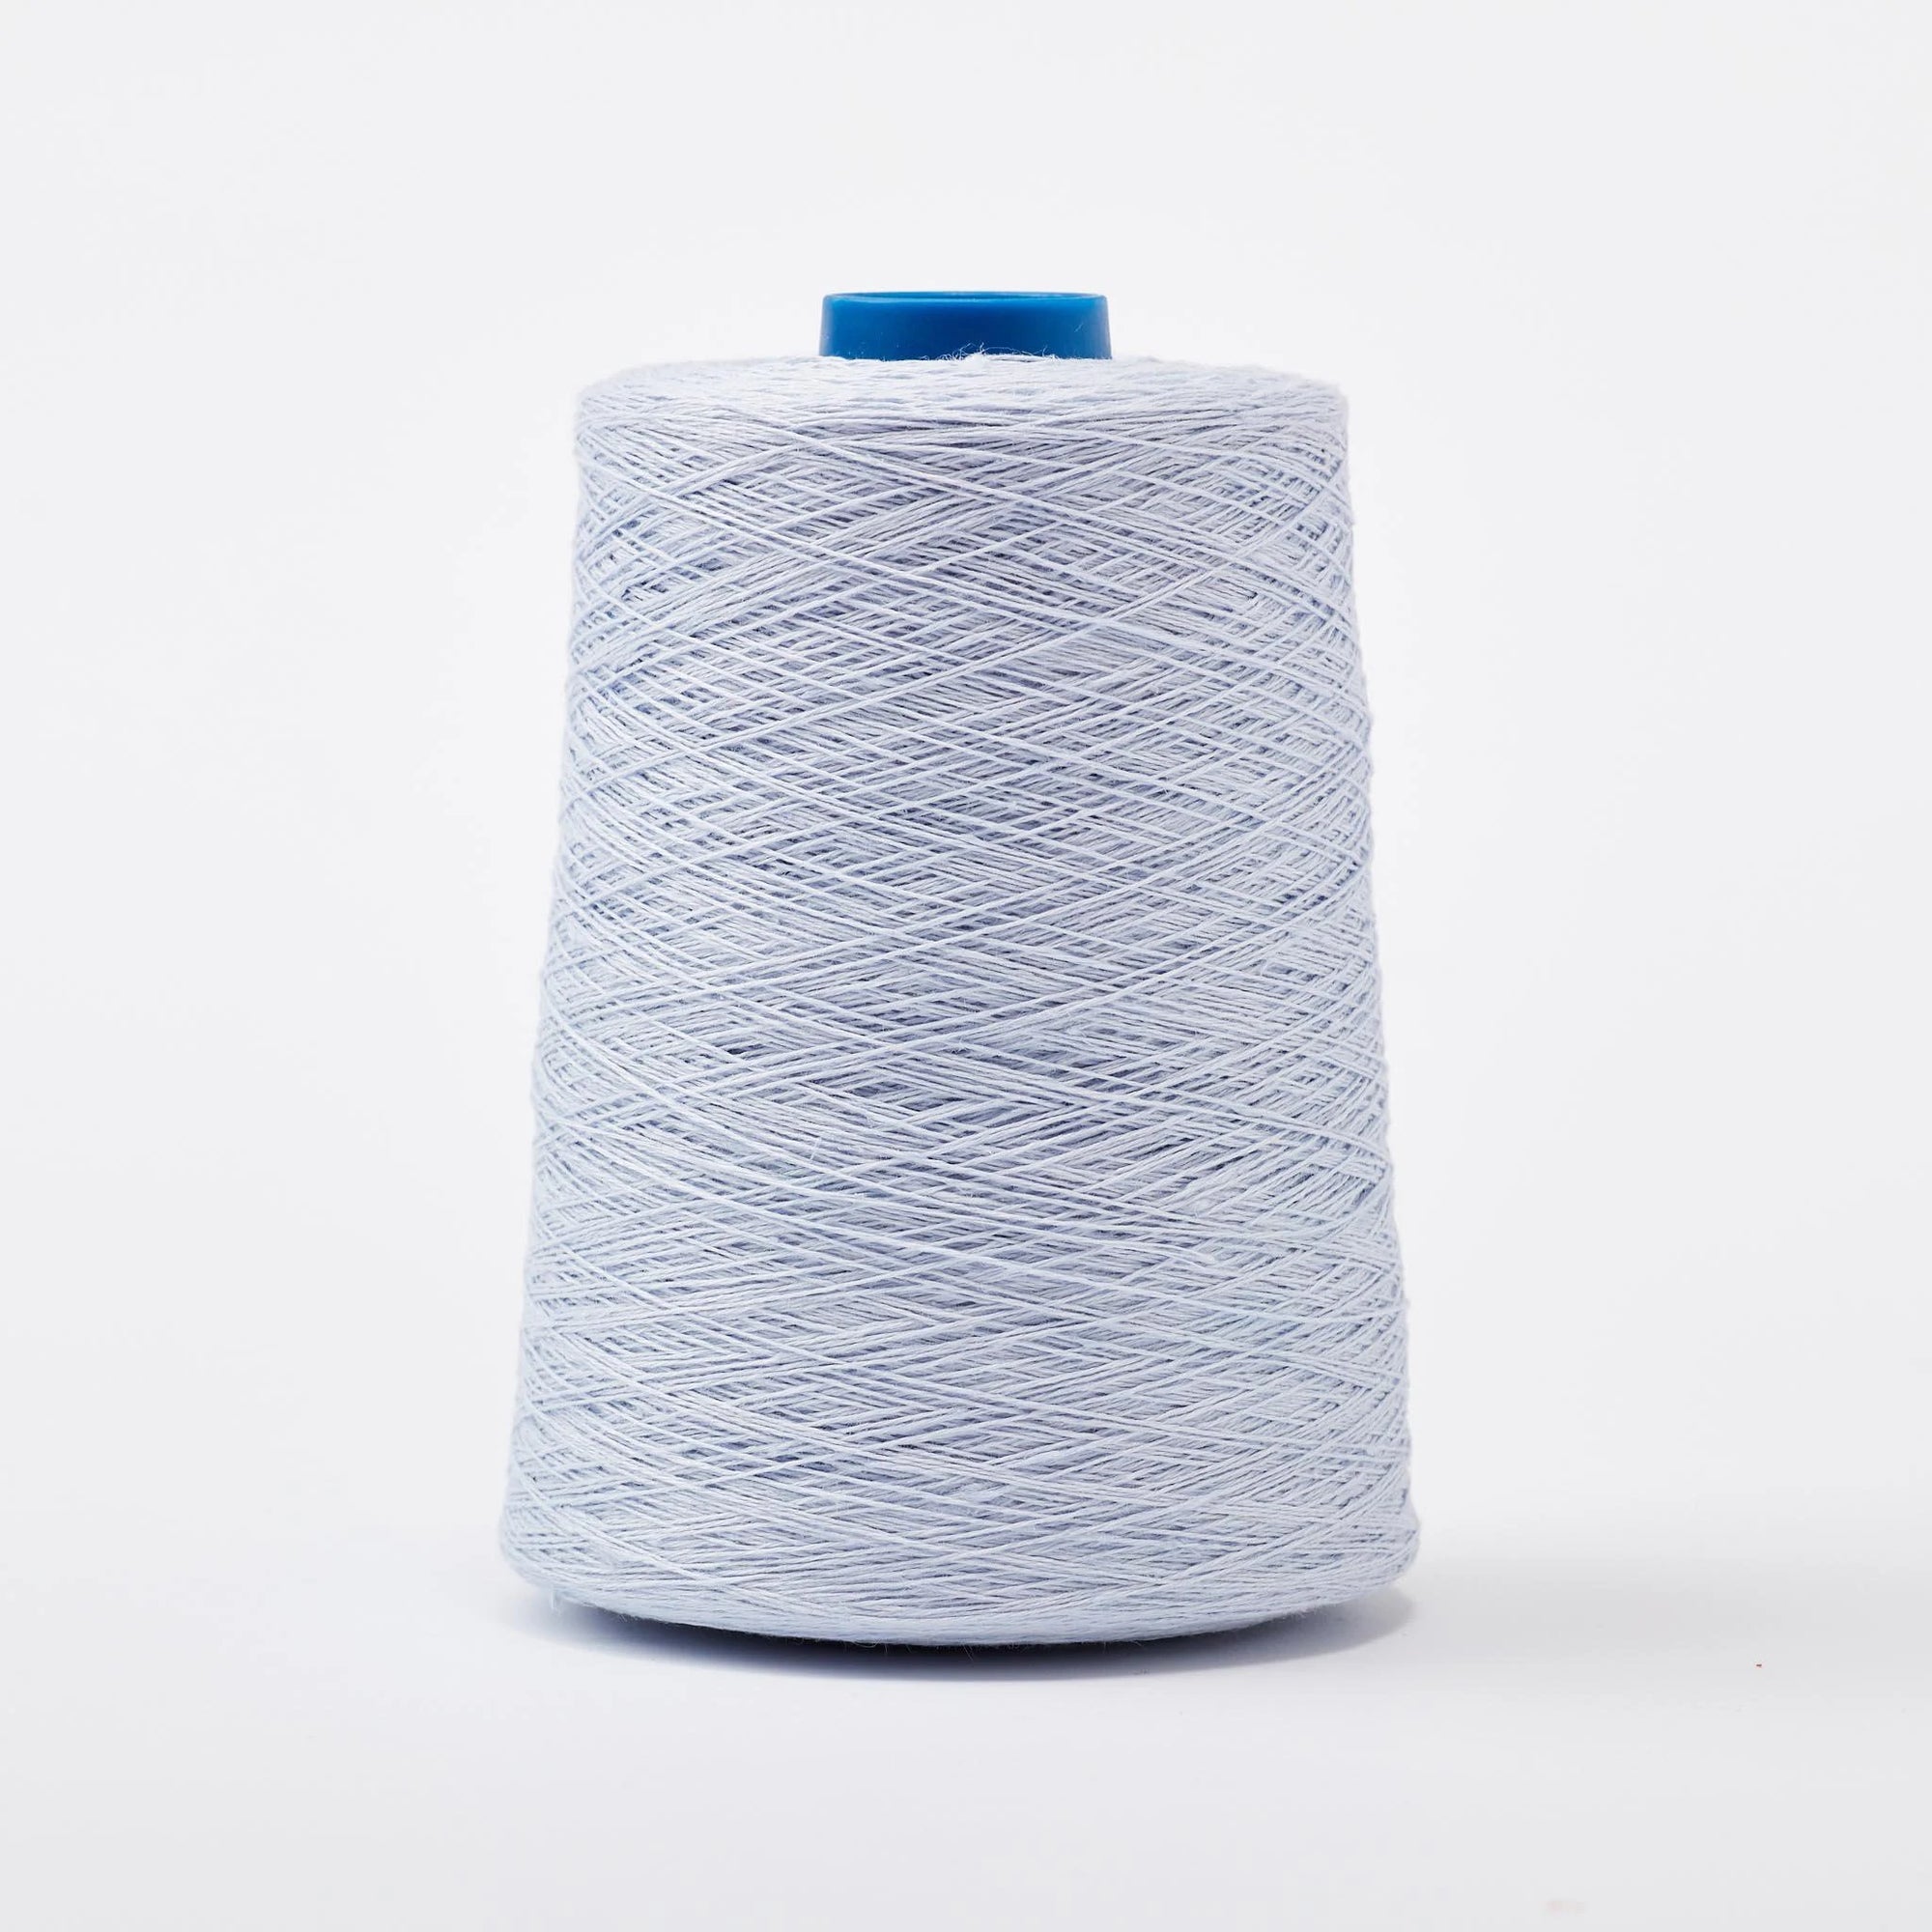 18/3 linen weaving yarn